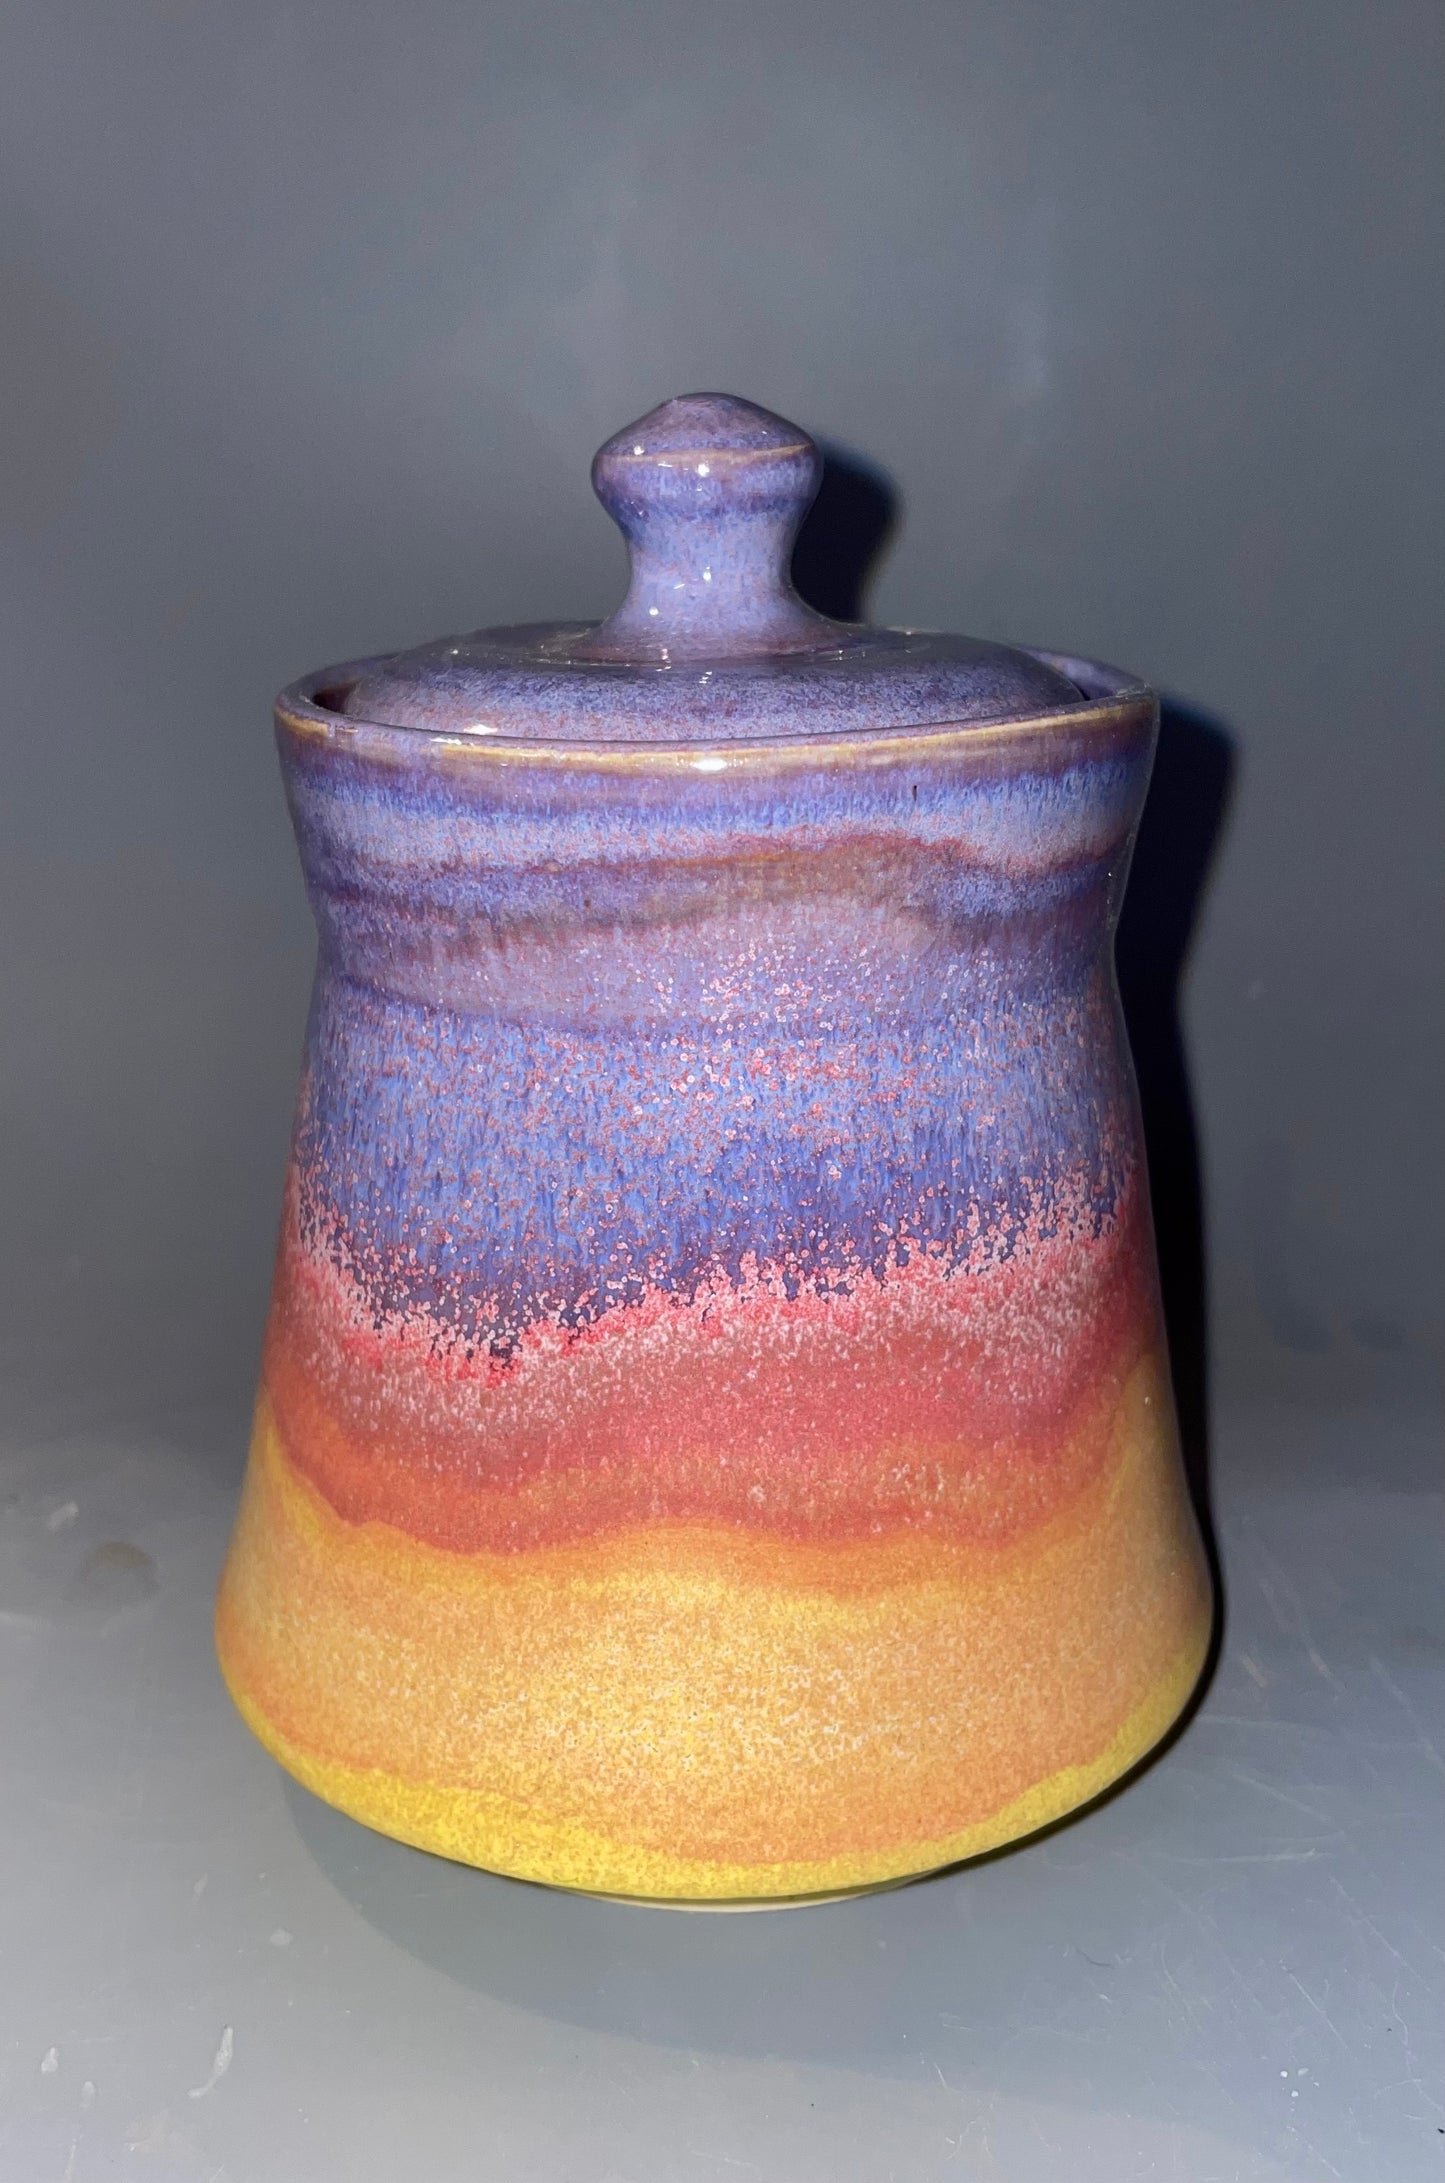 A Sunset Sugar Jar